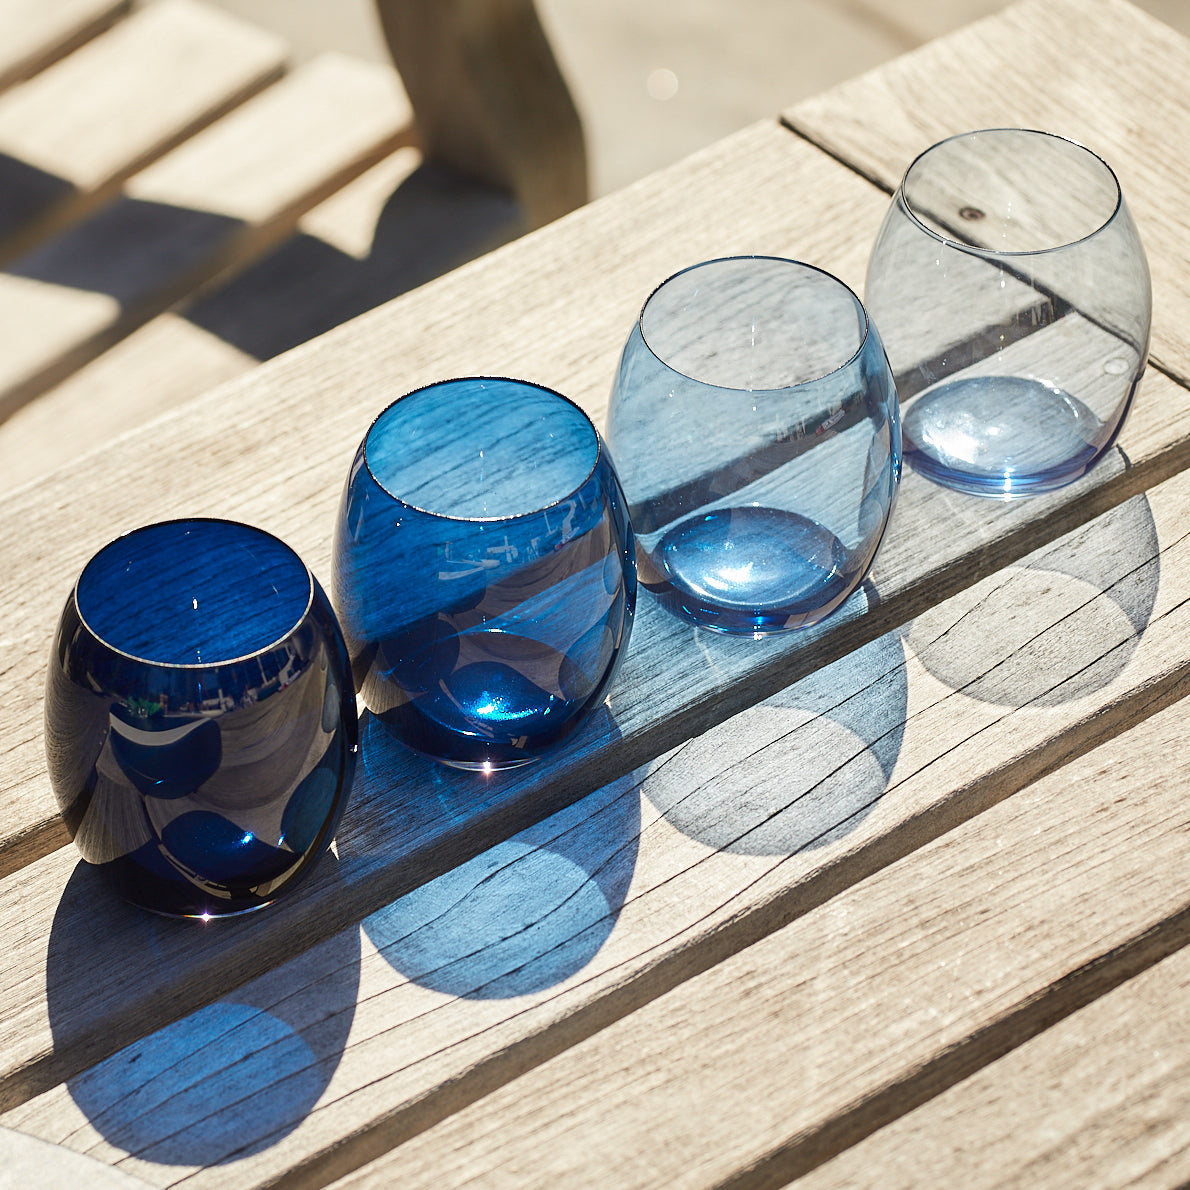 Les Nuages Blue Ombré Glasses Set of 4 from Caskata